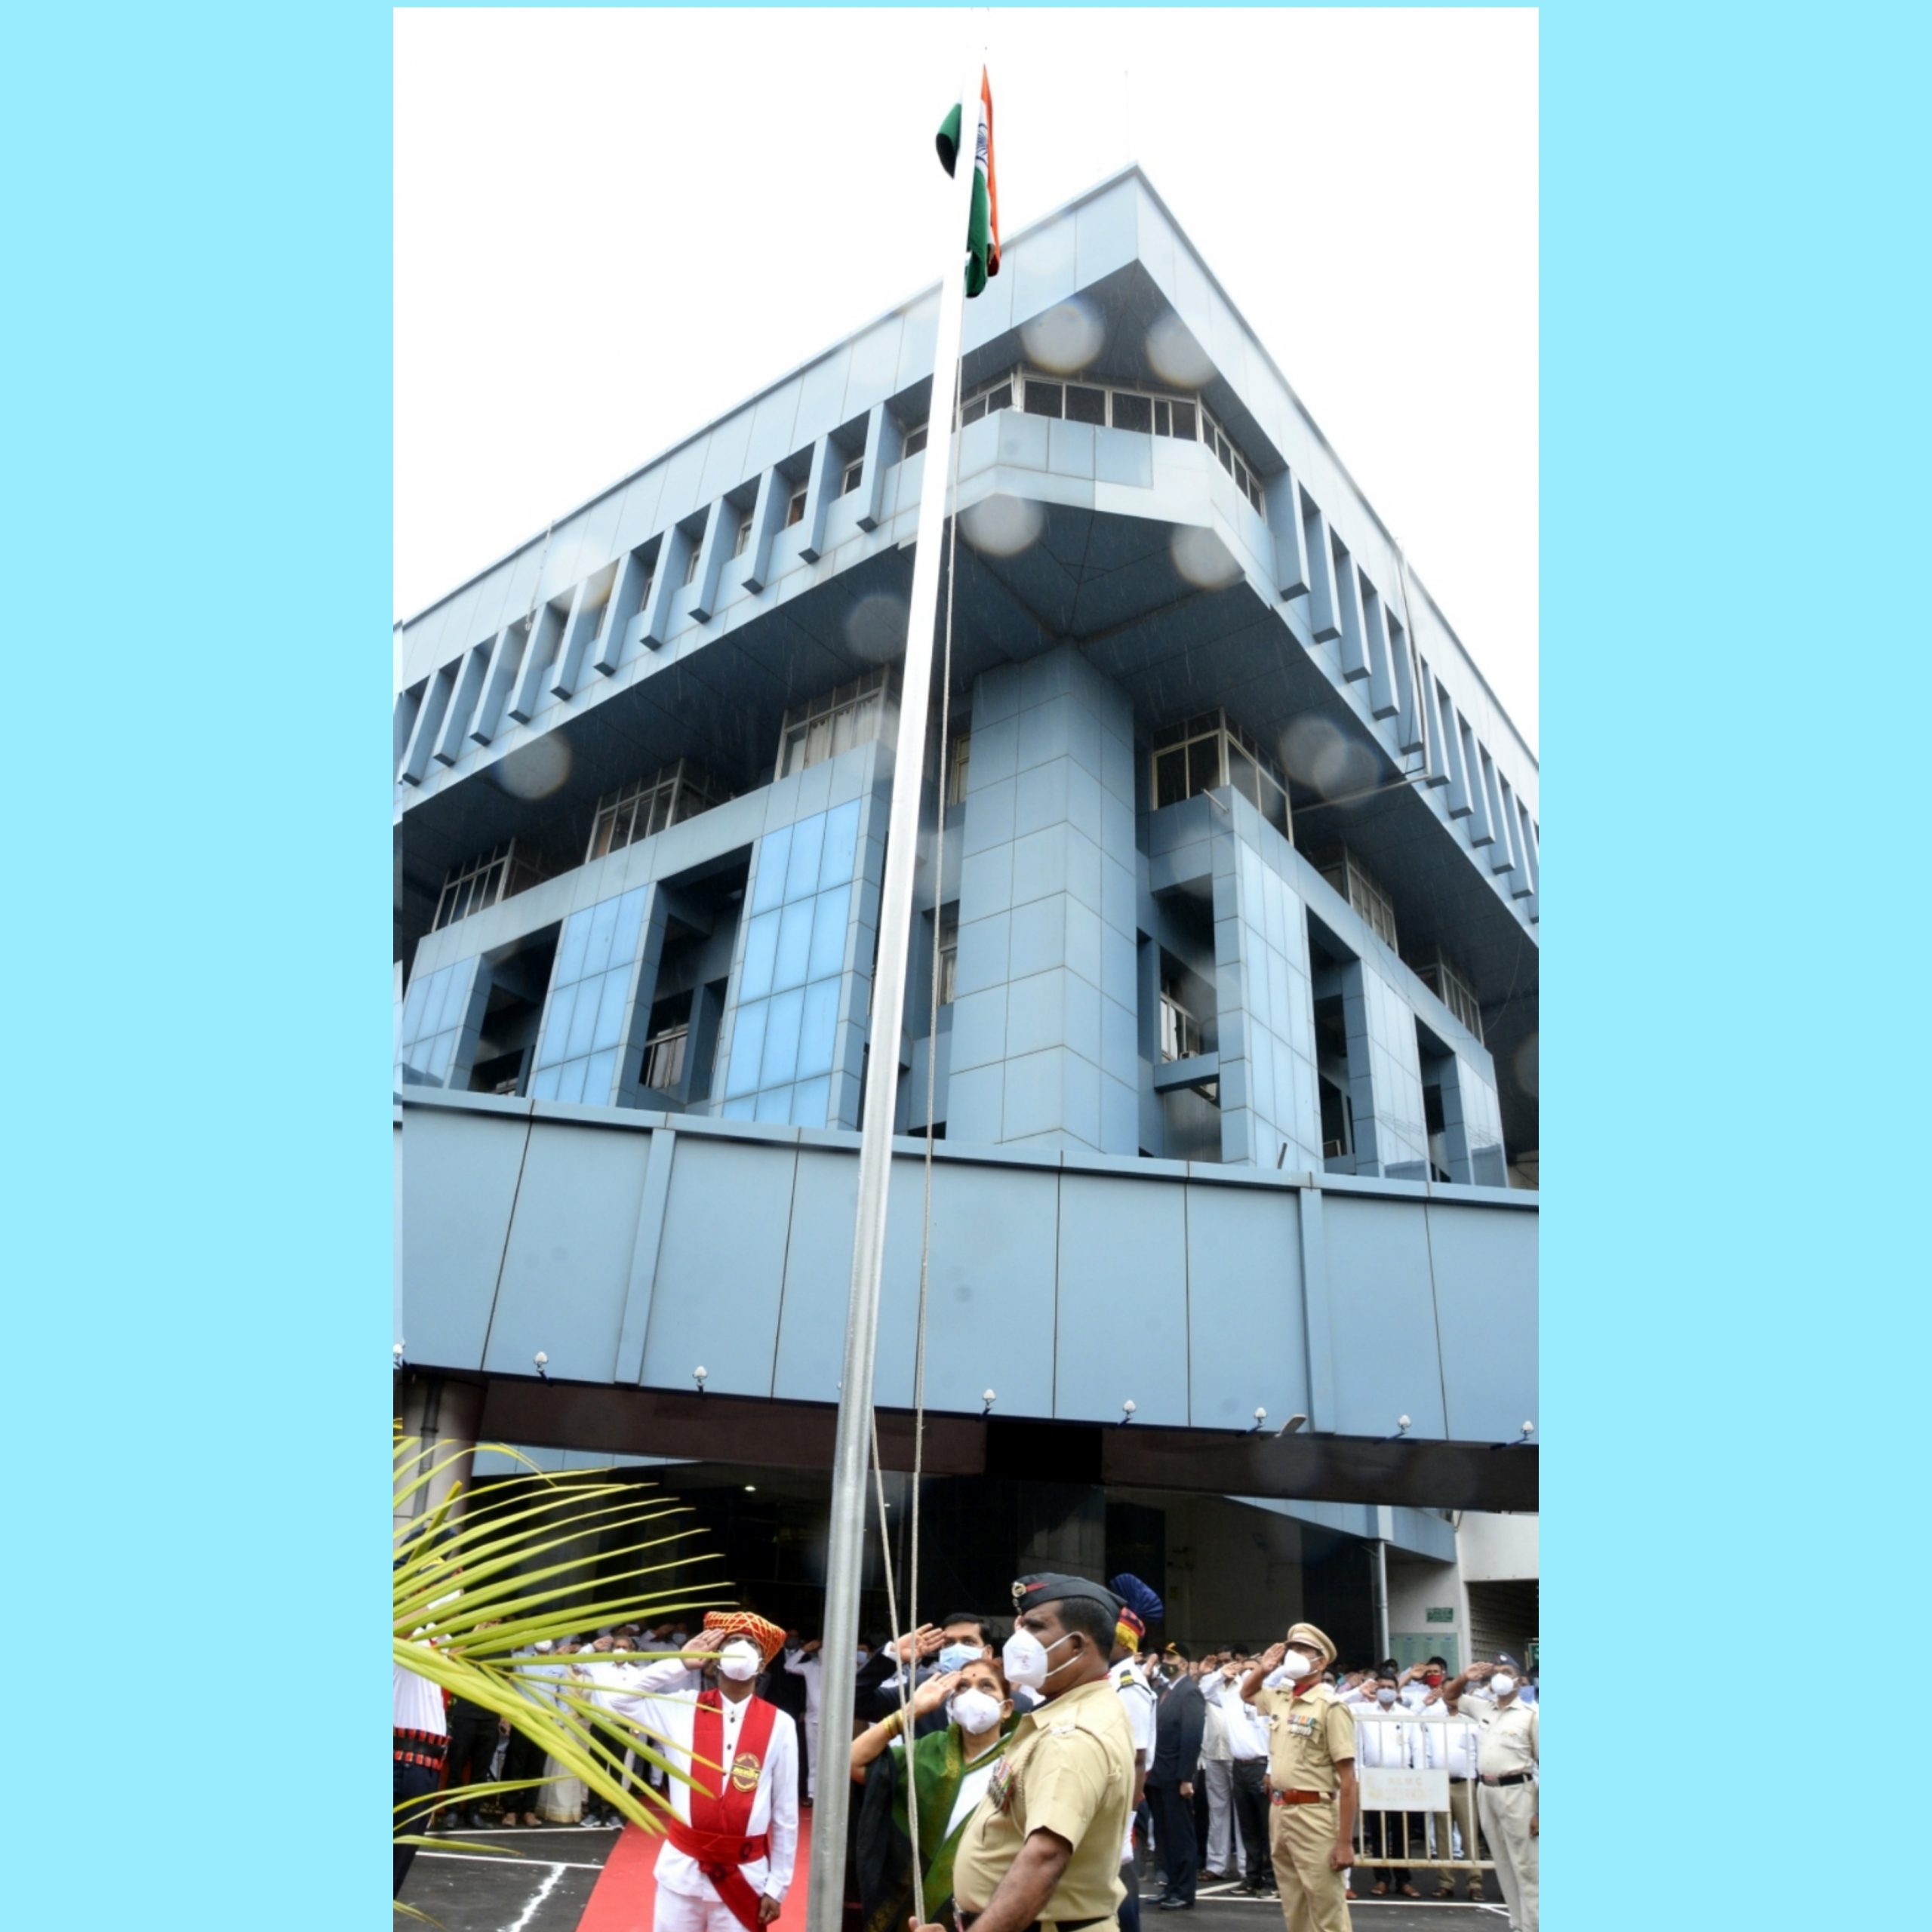 पिंपरी चिंचवड महापालिकेच्या मुख्यालयात महापौर माई ढोरे यांच्या हस्ते ध्वजारोहण